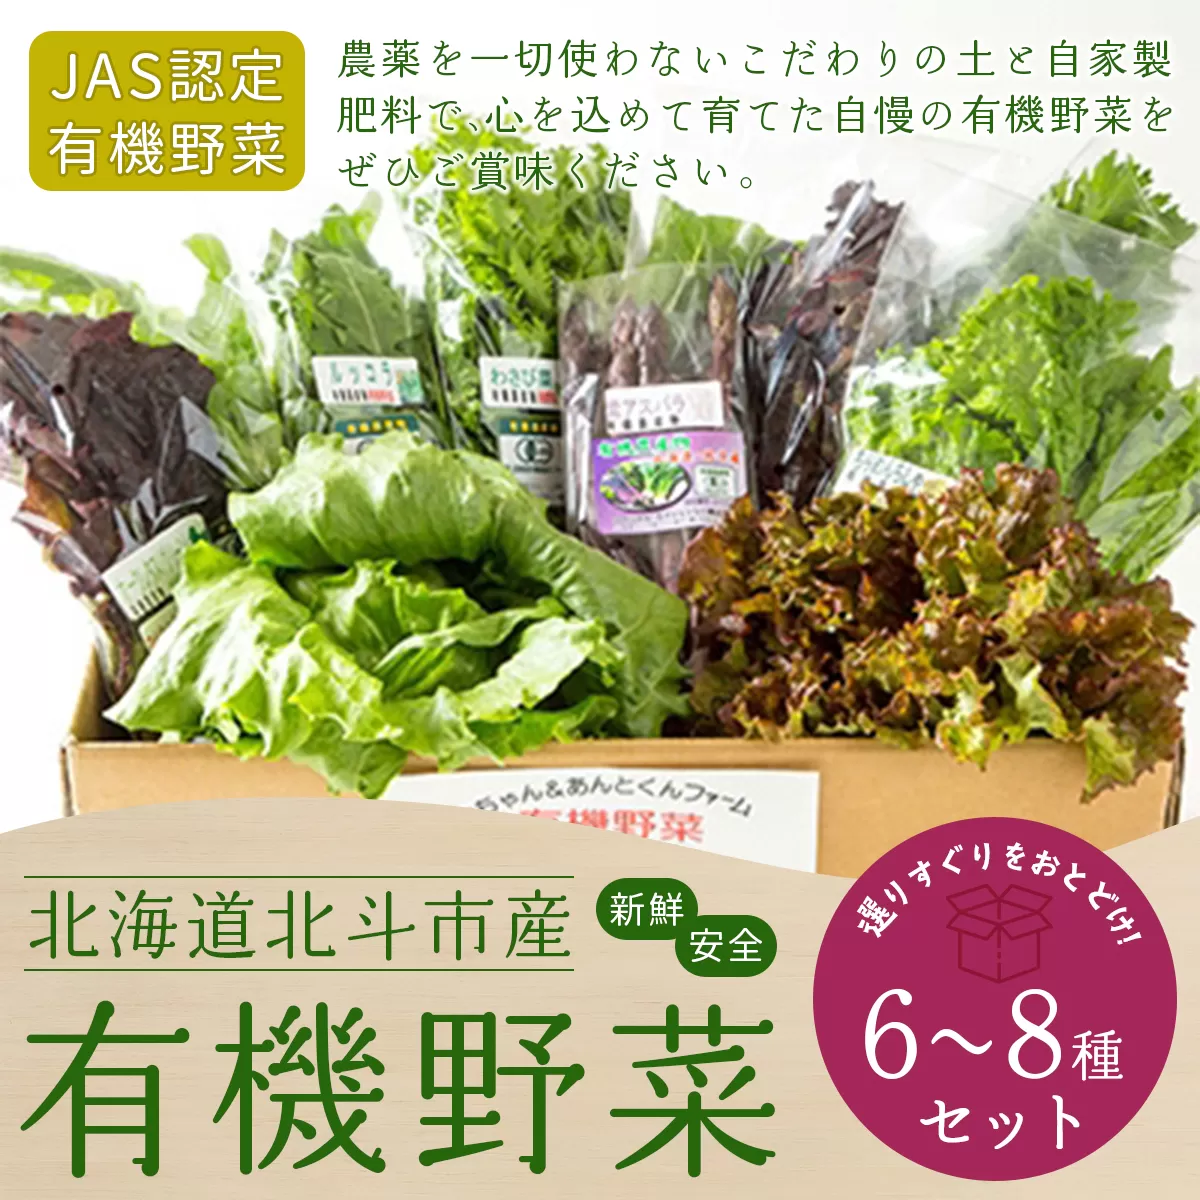 【JAS認定有機野菜】北斗市産 有機野菜6〜8種類野菜セット 紙箱入(季節で種類が変わります) HOKB020